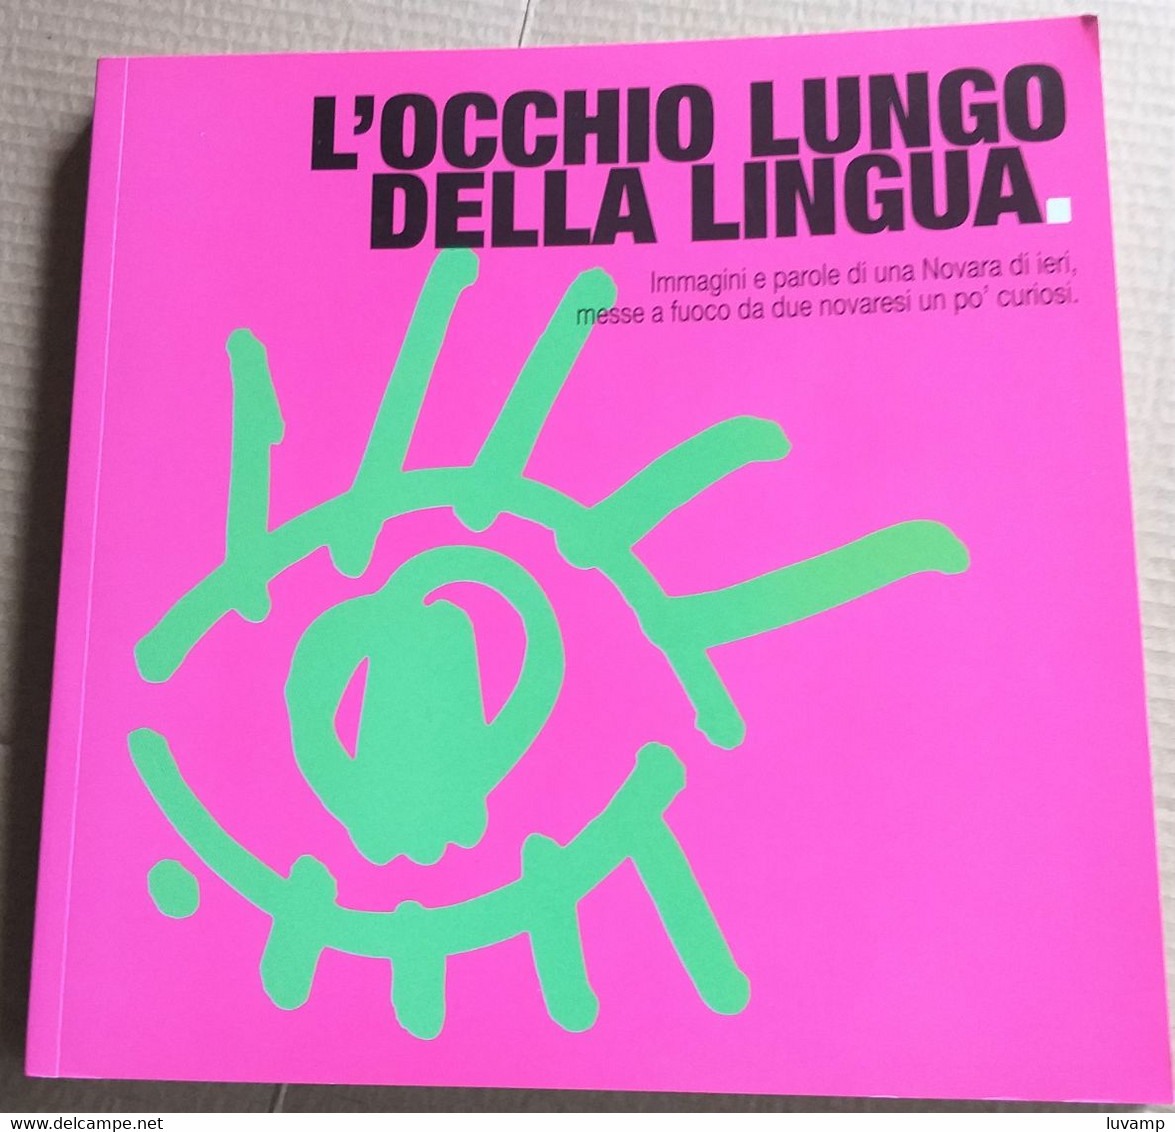 L'OCCHIO LUNGO DELLA LINGUA -IMMAGINI E PAROLE DI NOVARA -EDIZ. 2005 ( CART 70) - History